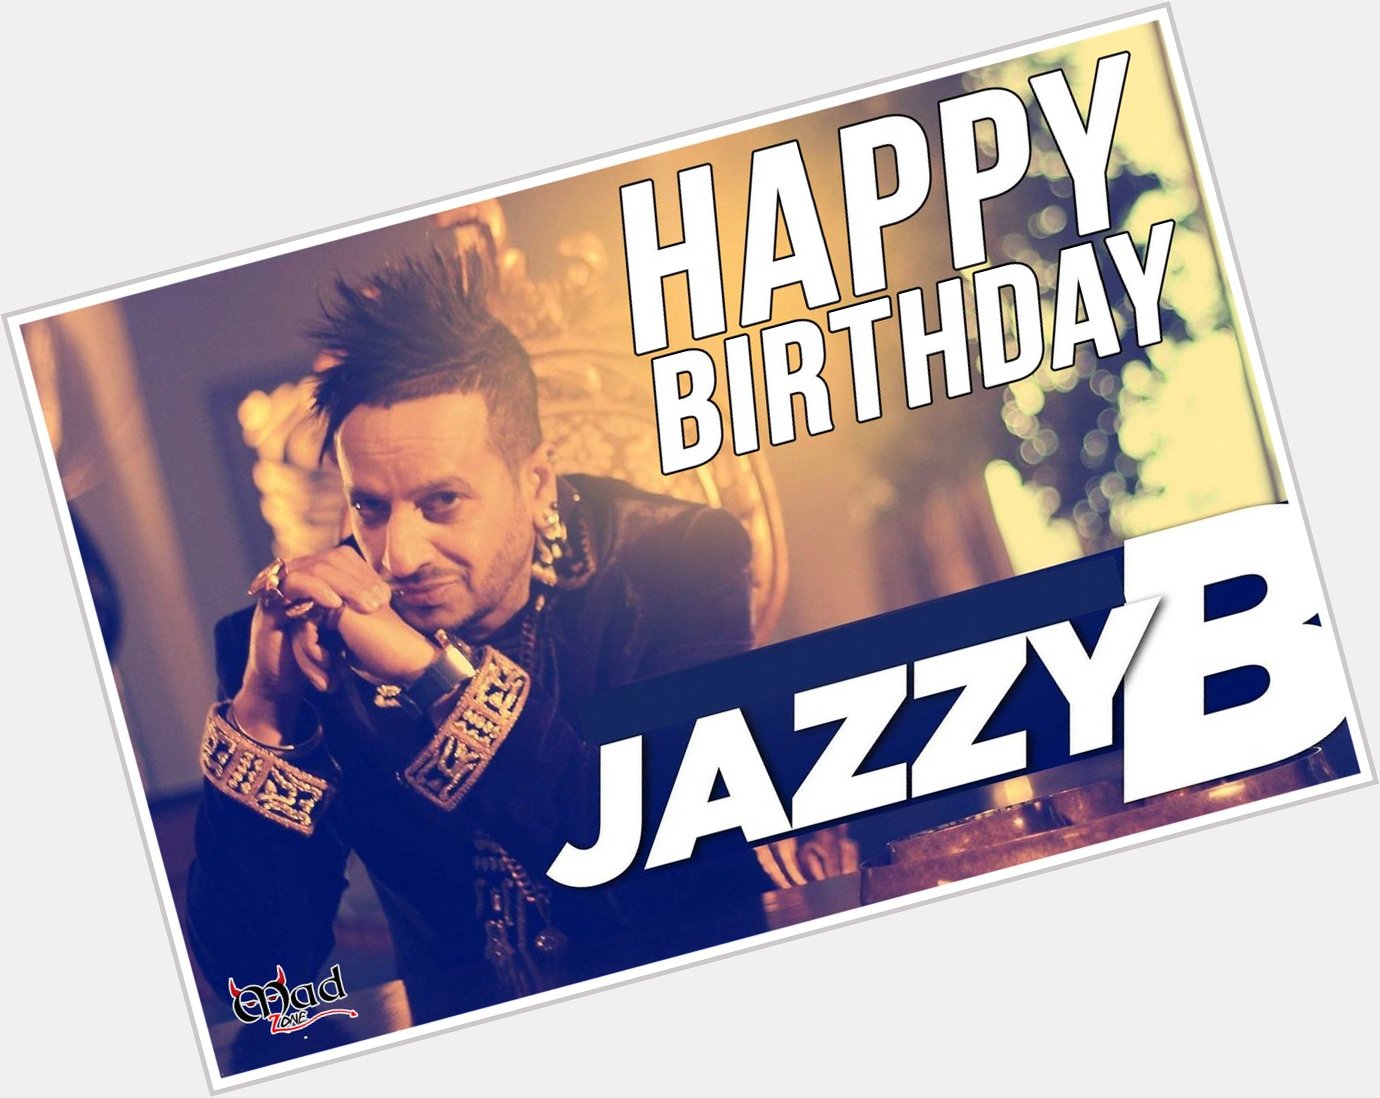 Happy Birthday to Jazzy B 
We all love u   